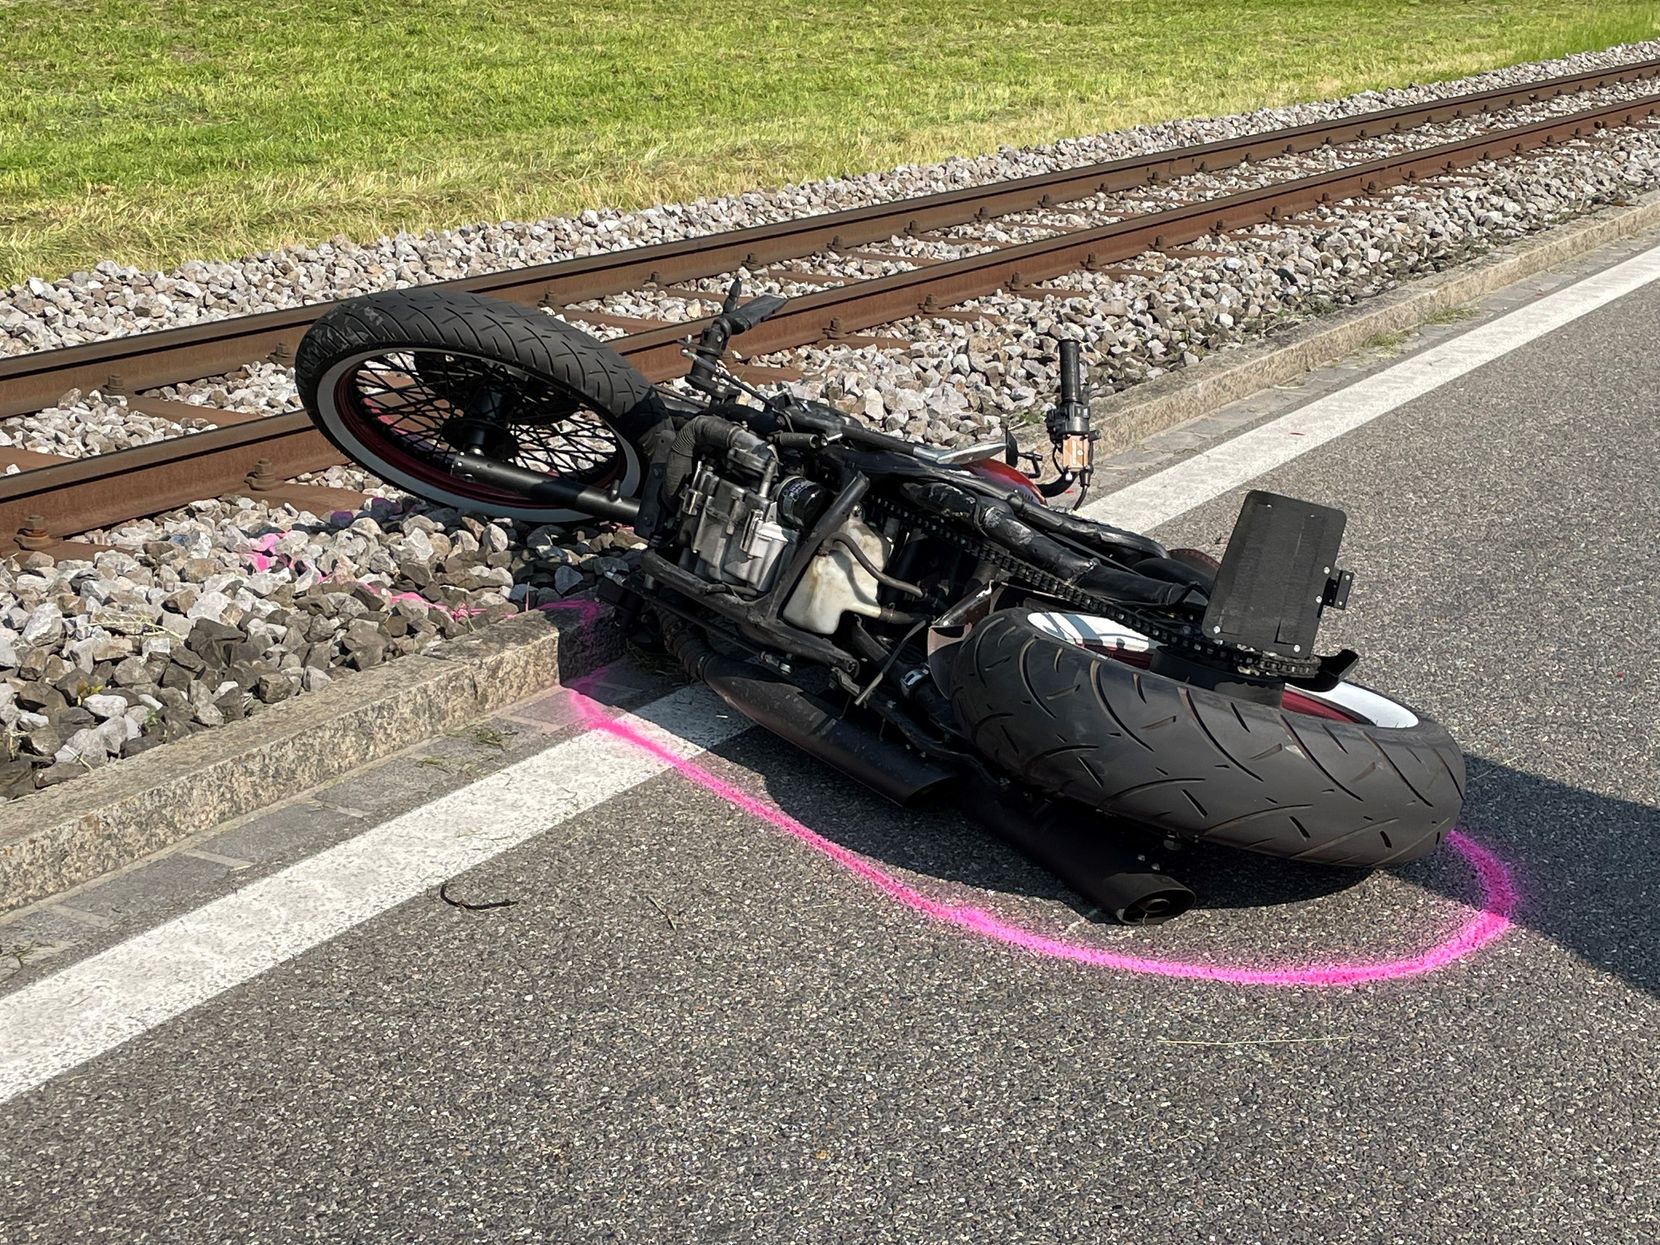 Ein verunfalltes Motorrad liegt auf der Strasse. Die Spurensicherung hat eine rosarote Linie um die Maschine gemalt.